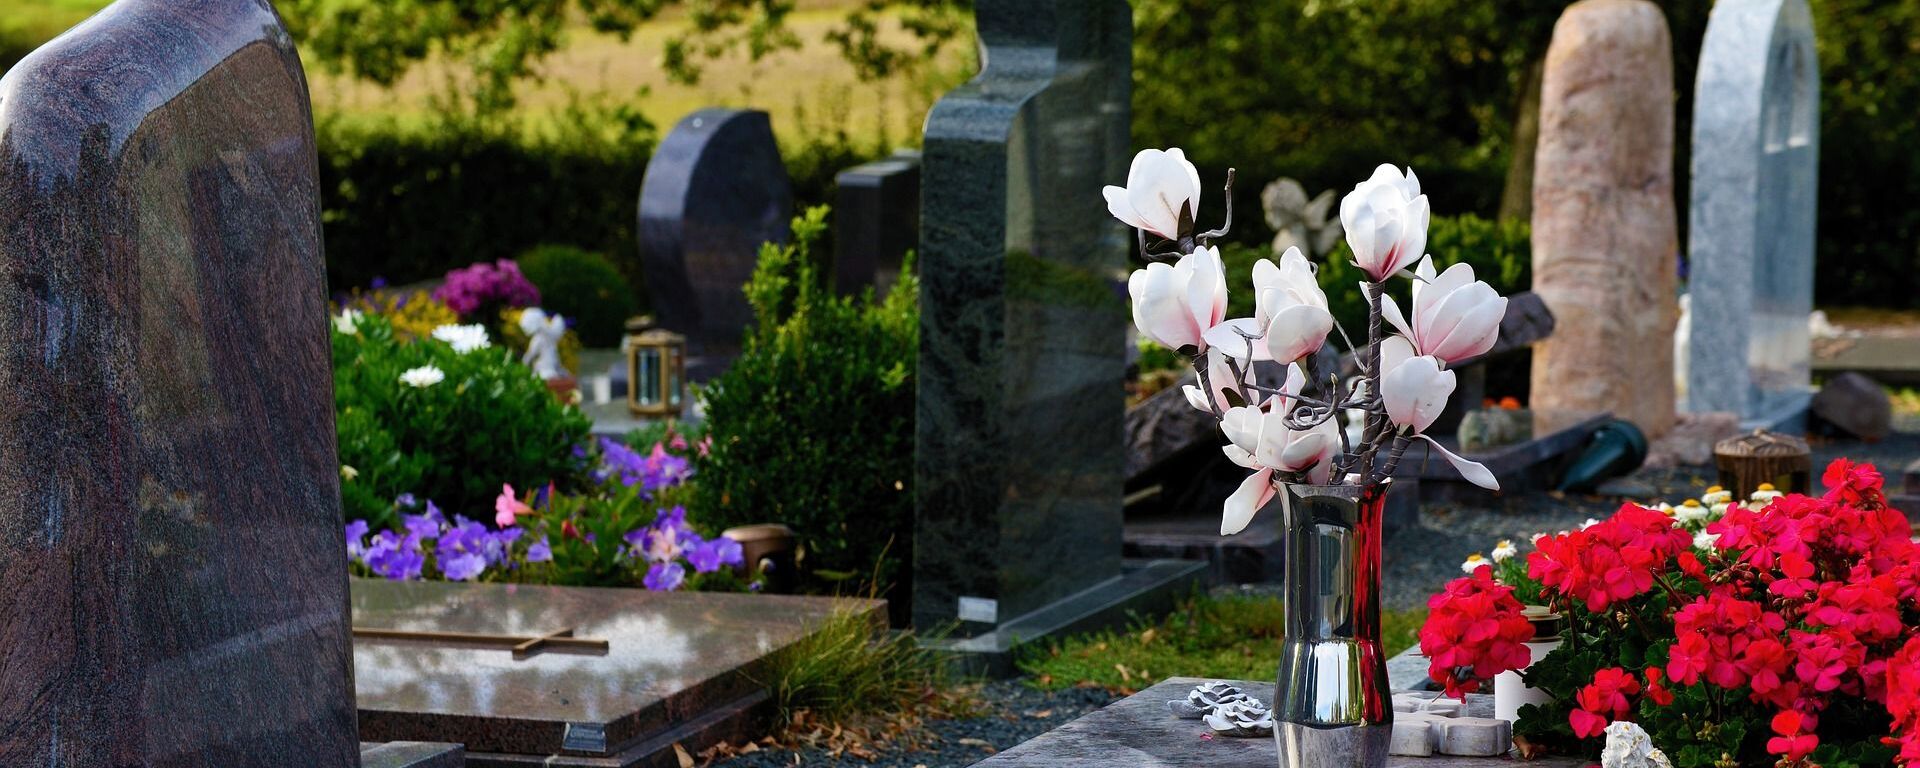 Цветы на кладбище - Sputnik Латвия, 1920, 26.09.2020